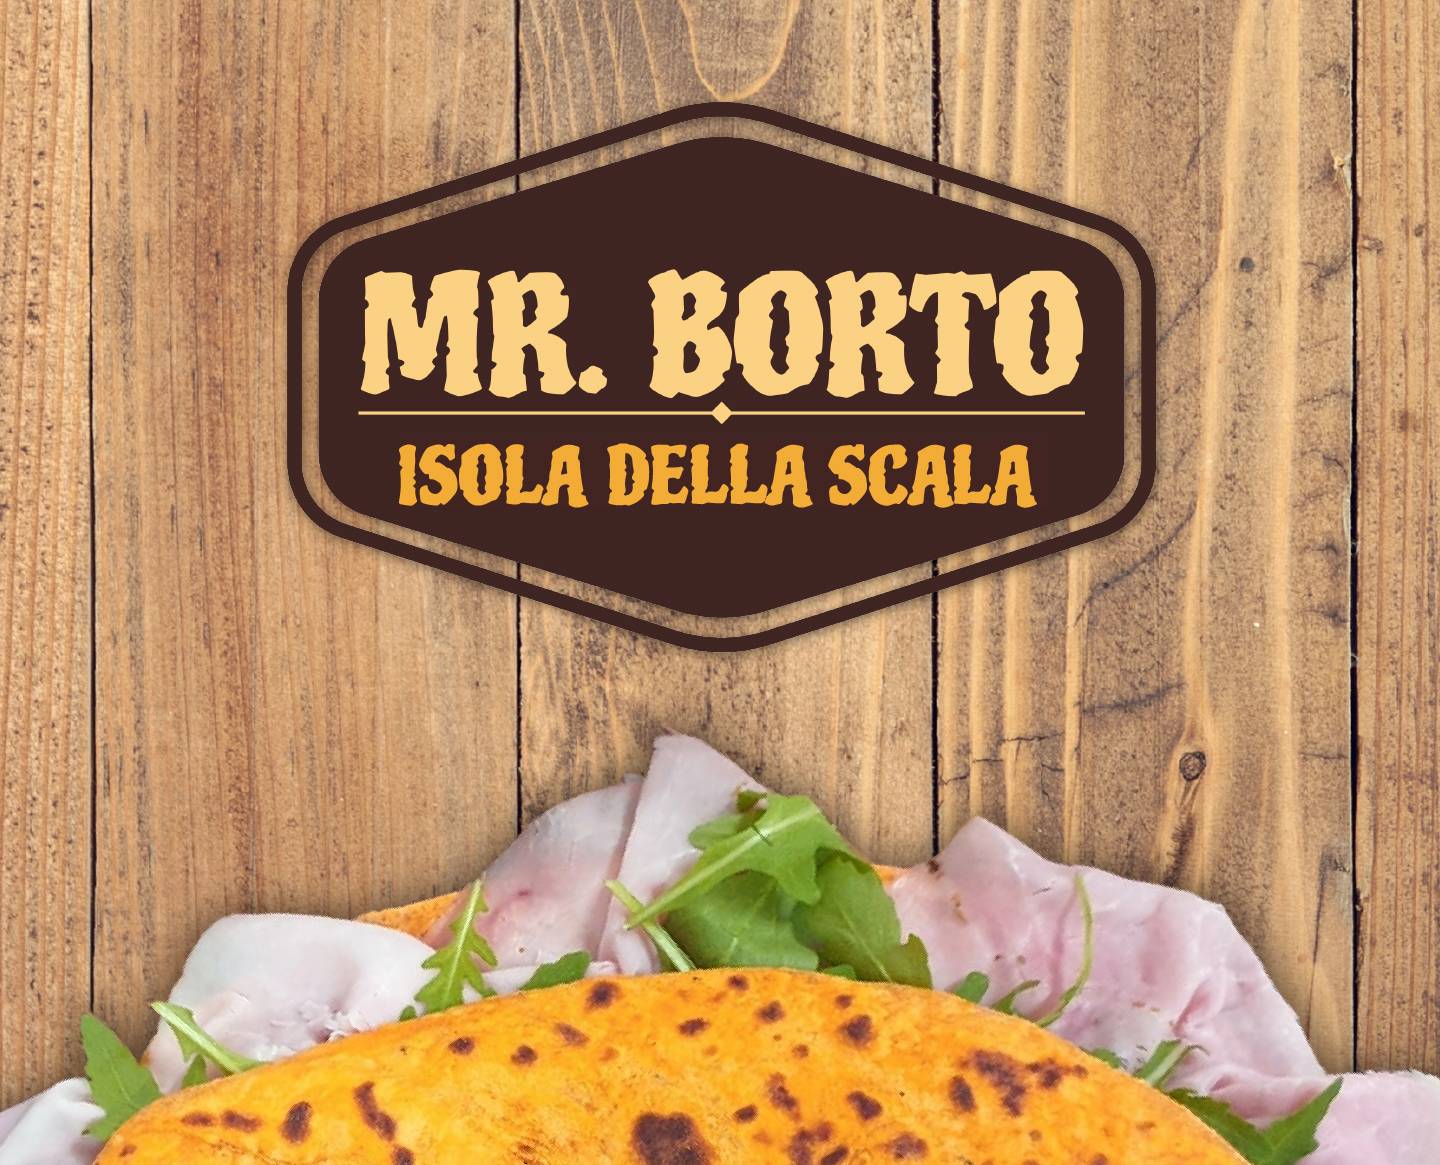 Mr.borto - Isola della Scala